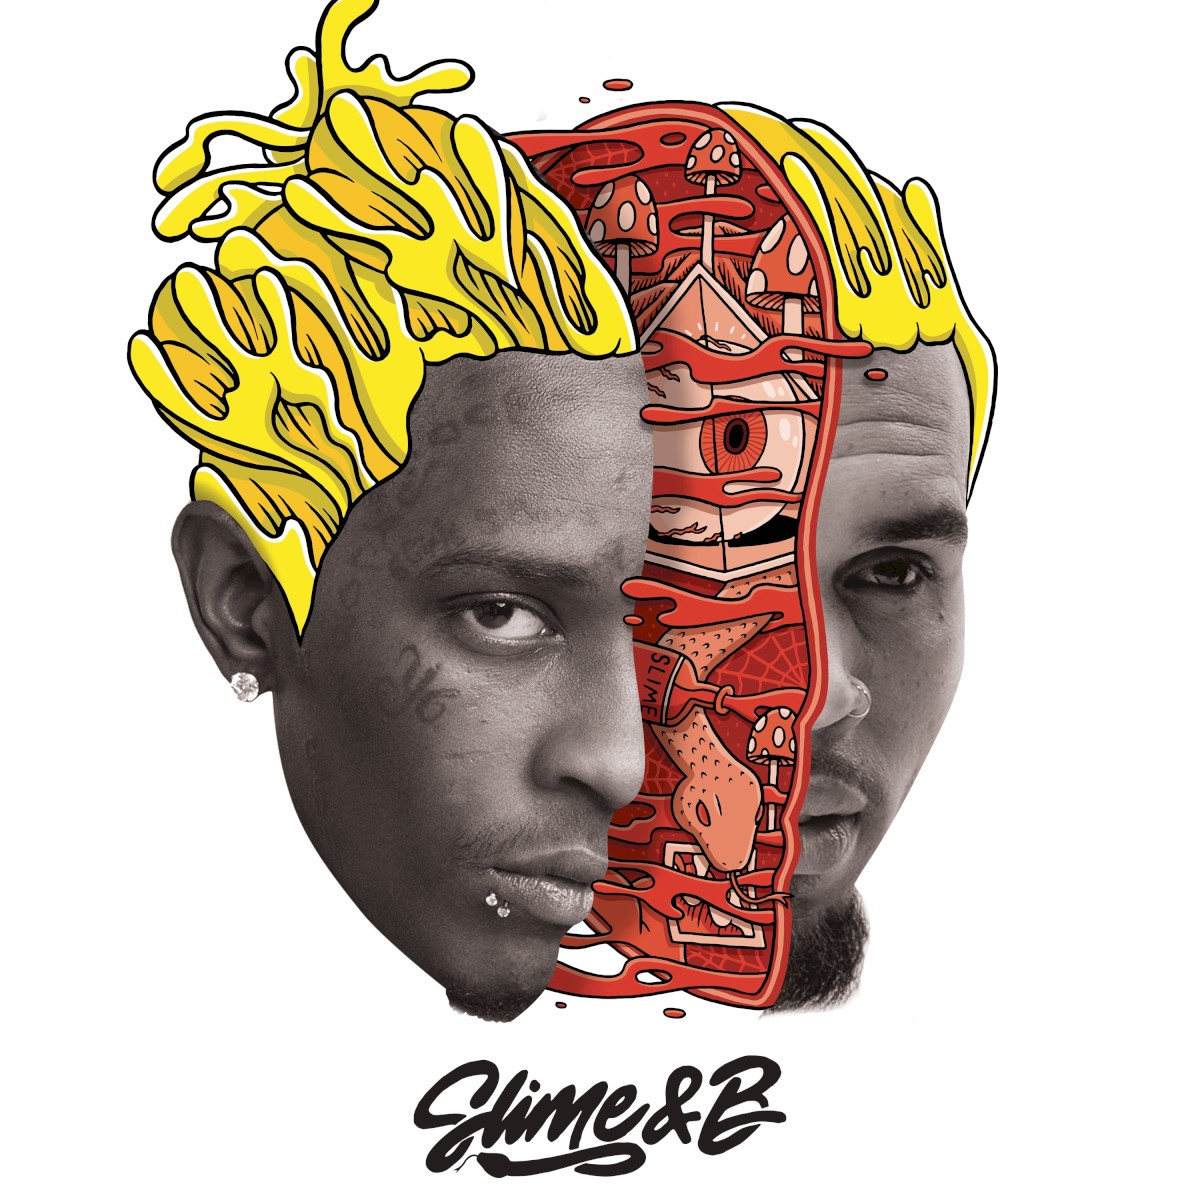 Chris Brown & Young Thug — Animal cover artwork